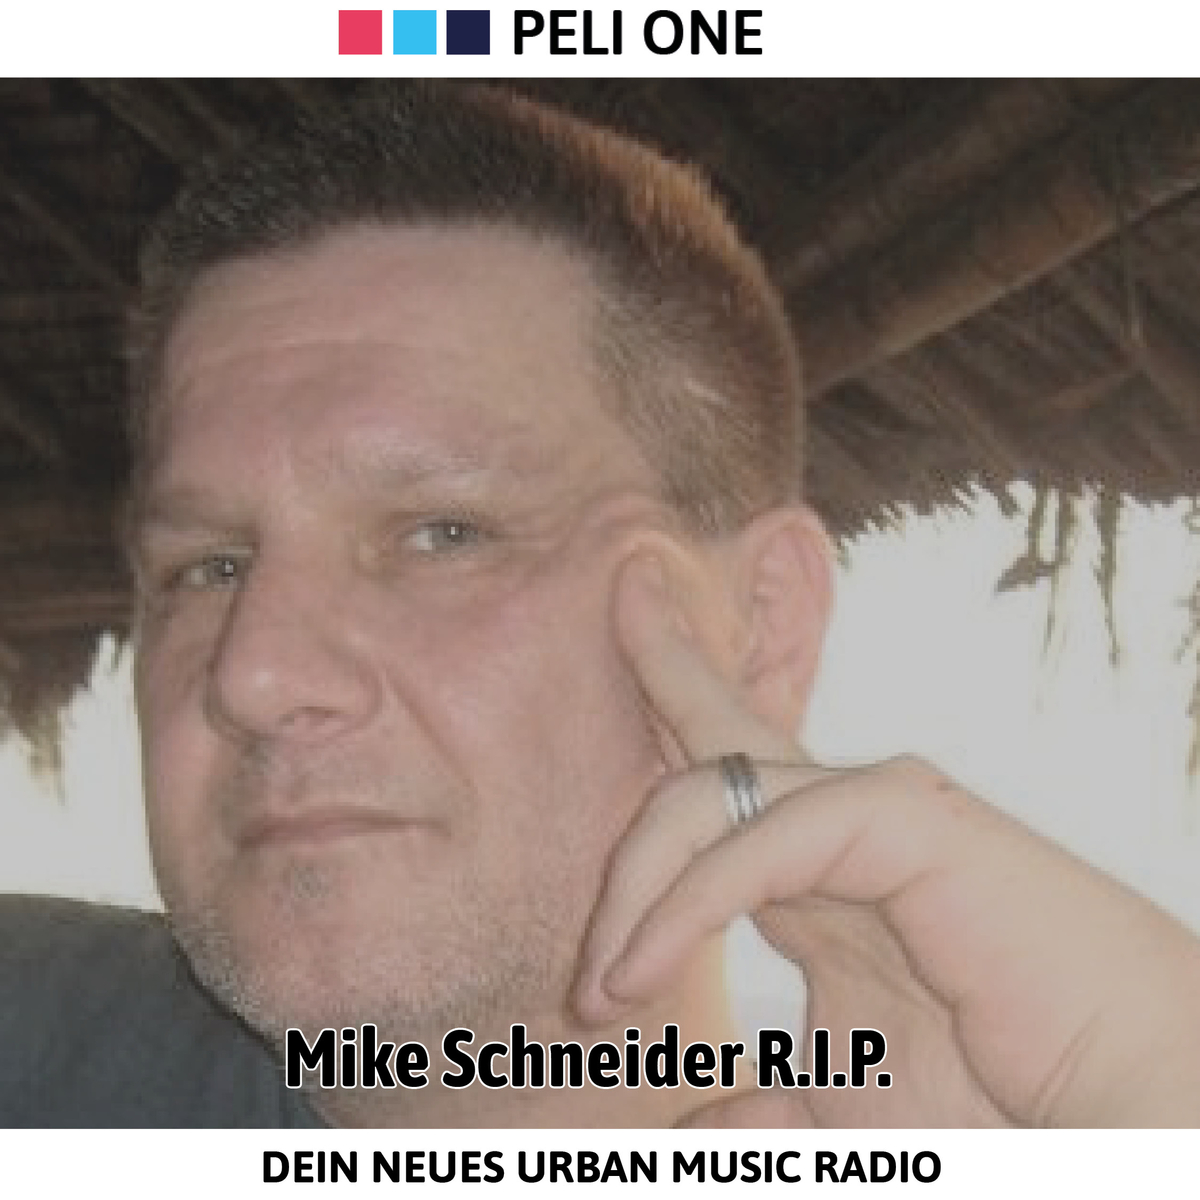 RIP Mike Schneider